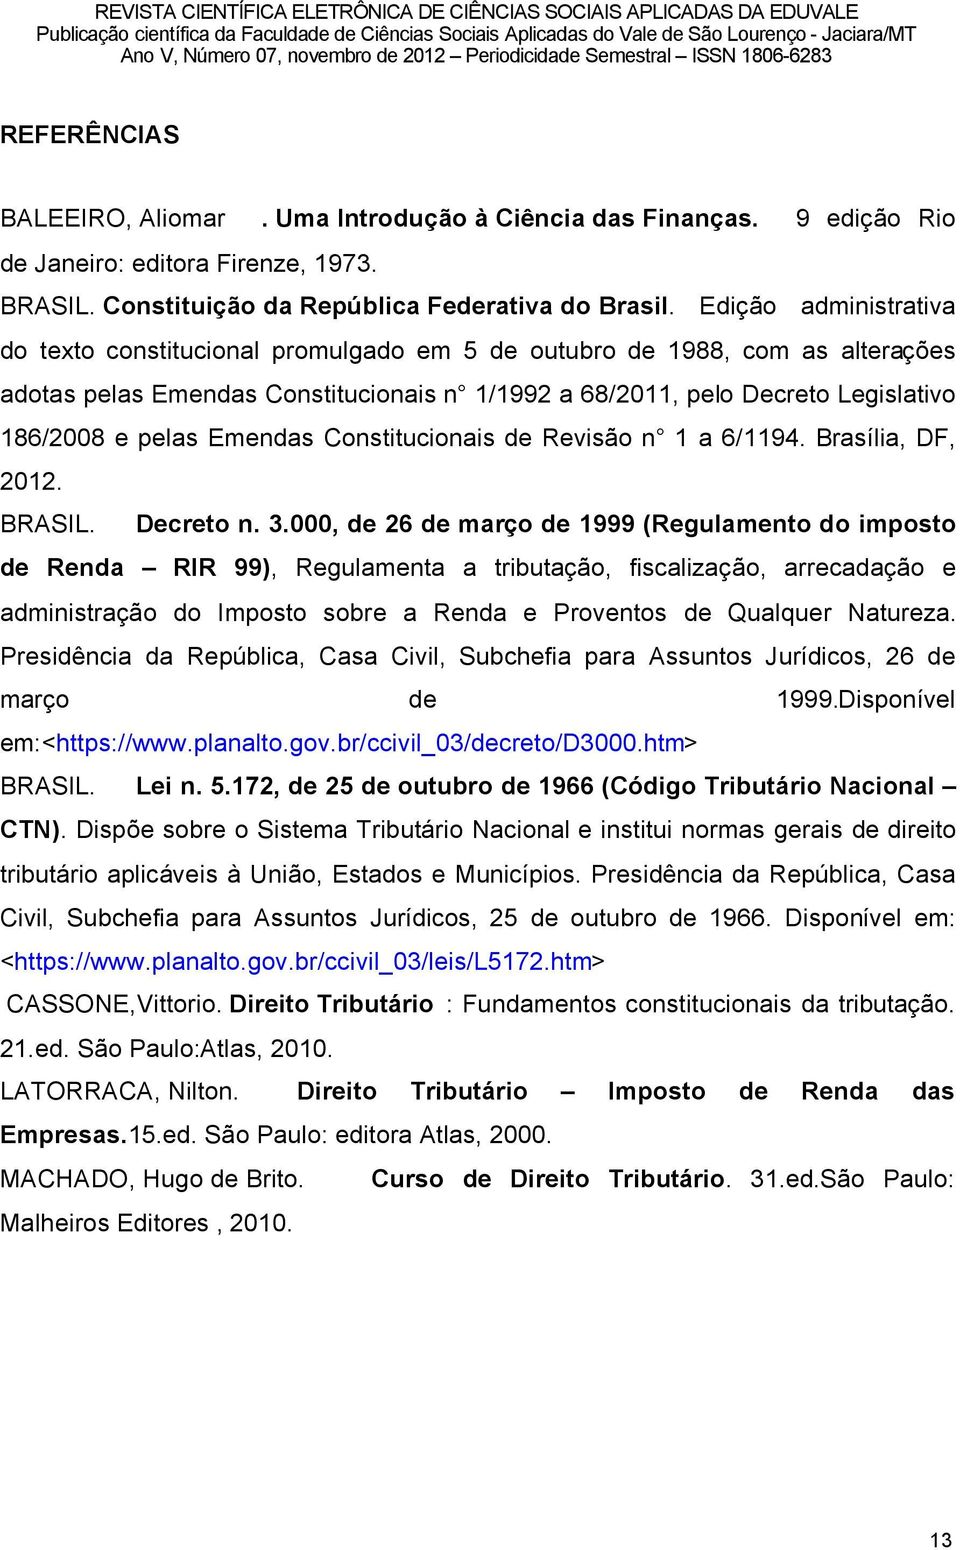 Emendas Constitucionais de RevisÑo nî 1 a 6/1194. BrasÖlia, DF, 2012. BRASIL. Decreto n. 3.